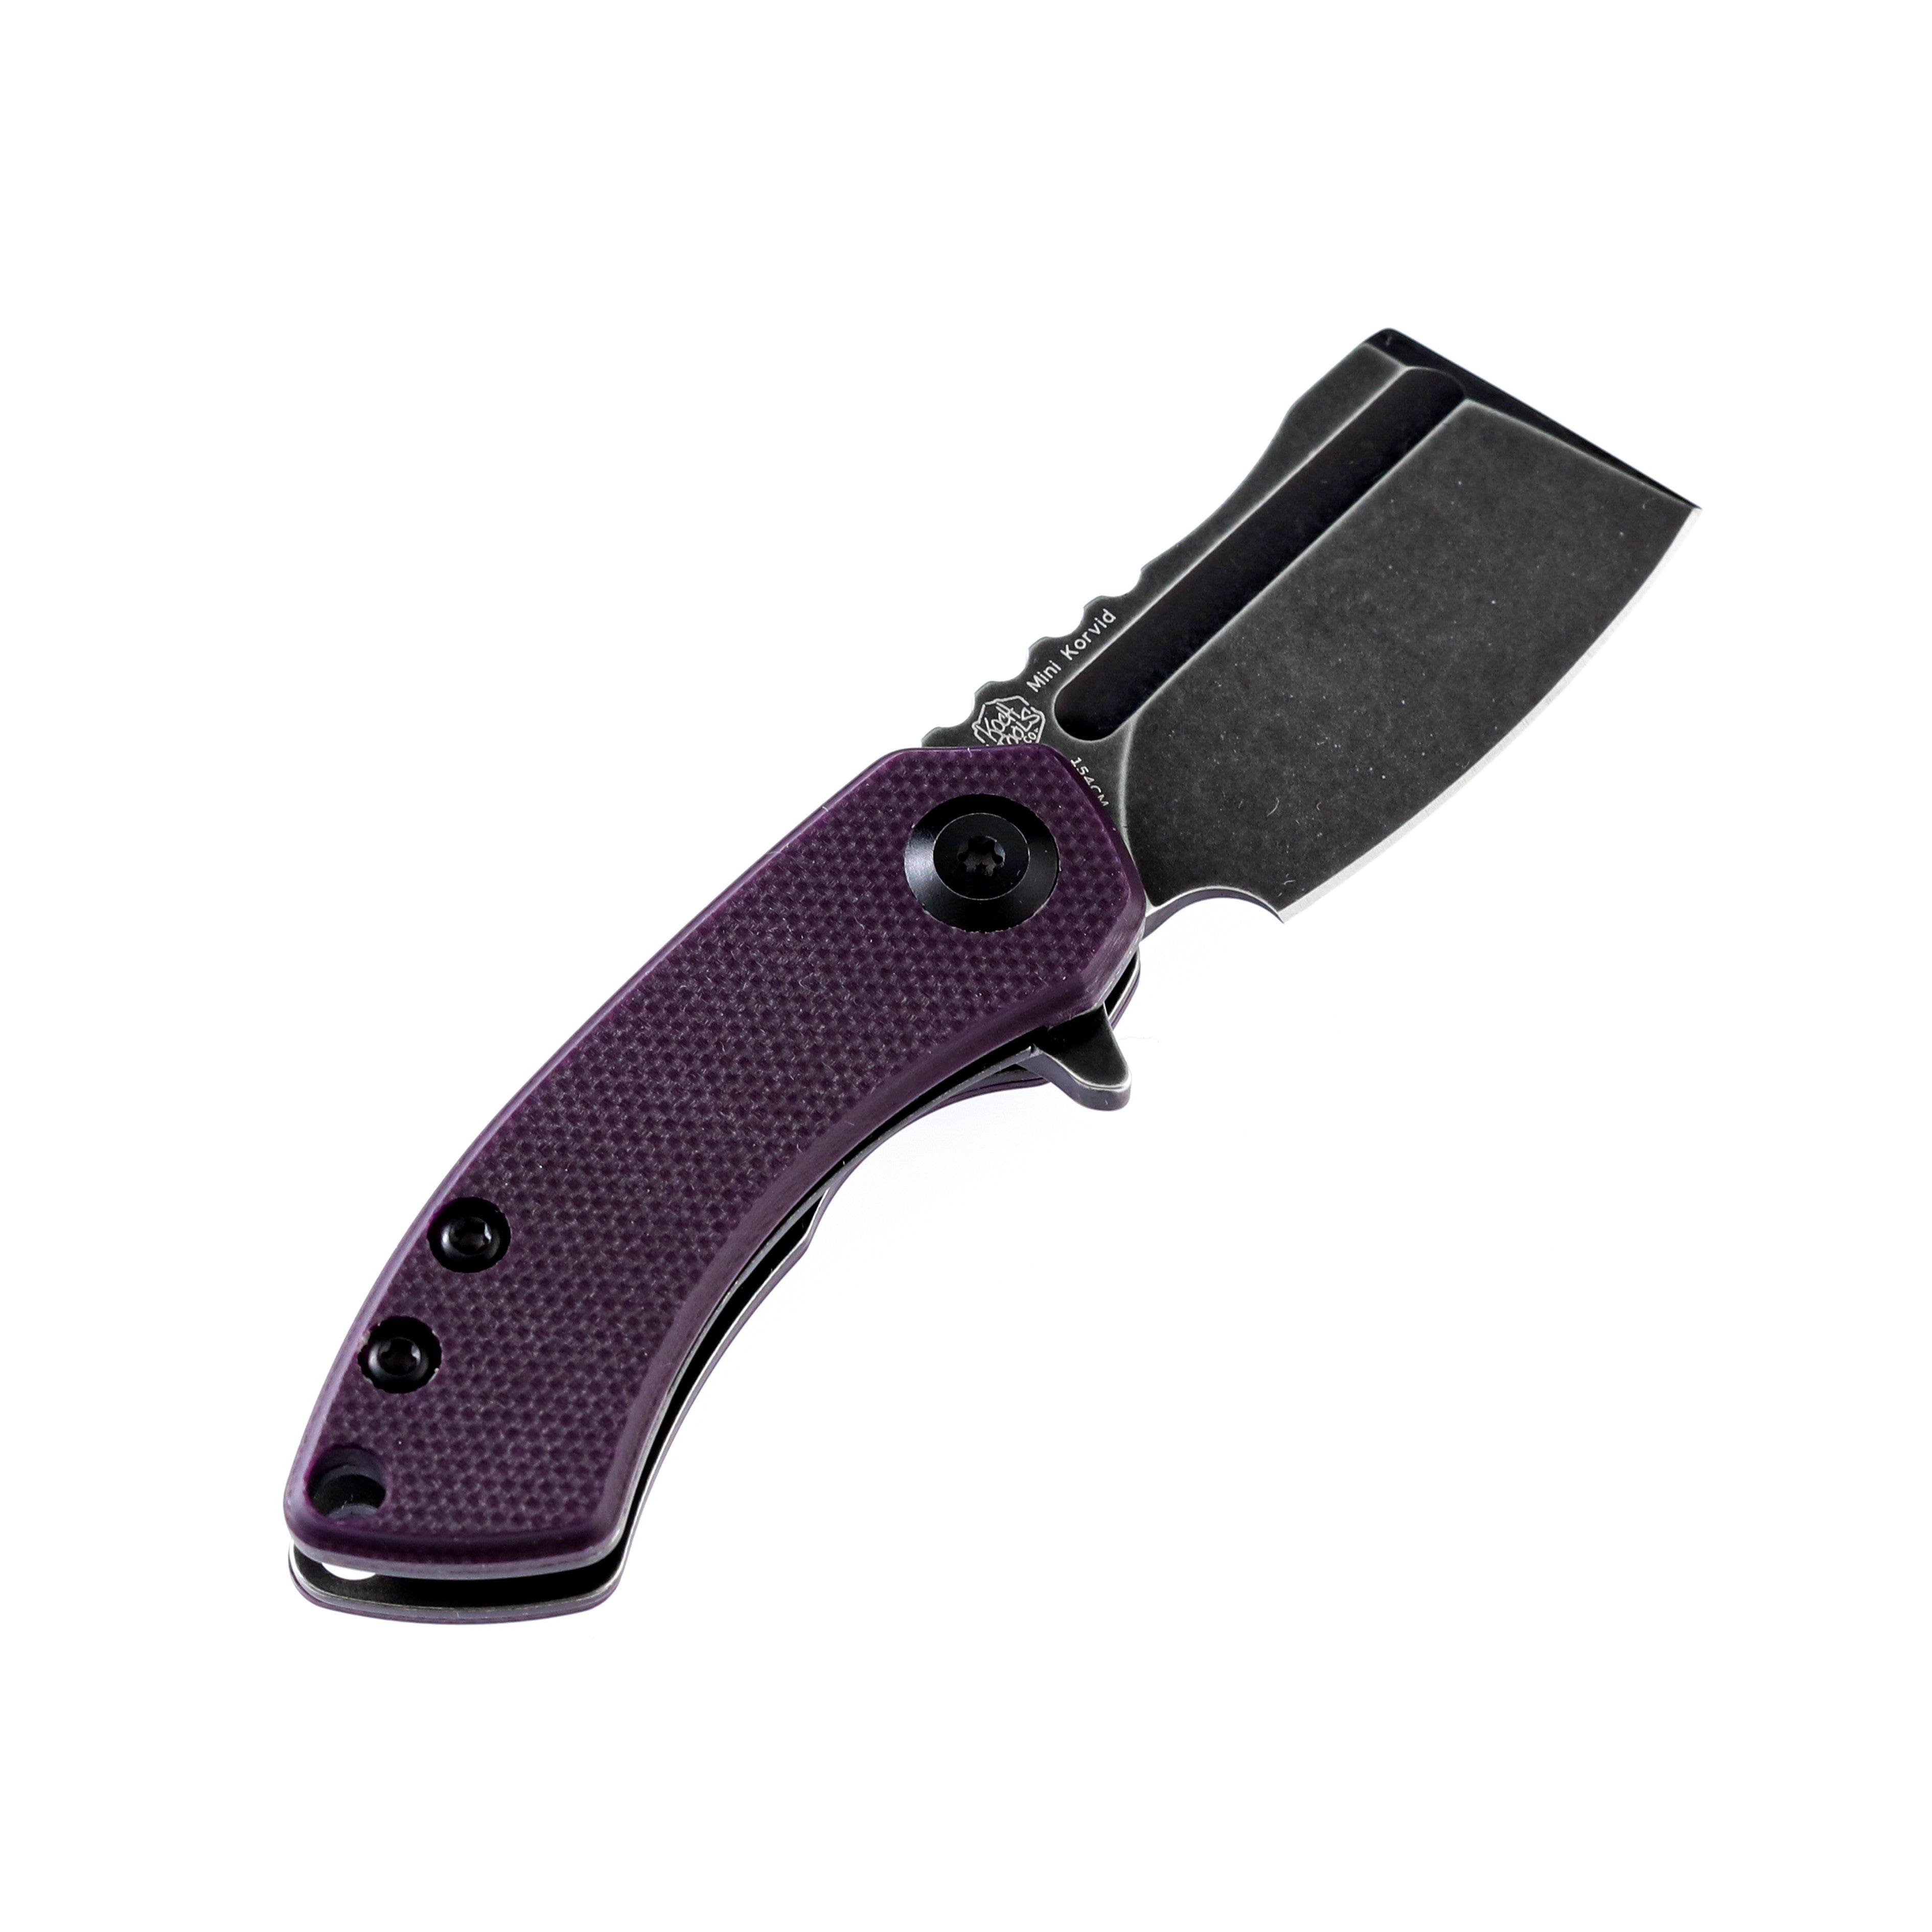 Kansept Knives T3030A3 Mini Korvid 154CM Blade Purple G10 Handle Liner Lock Edc Knives